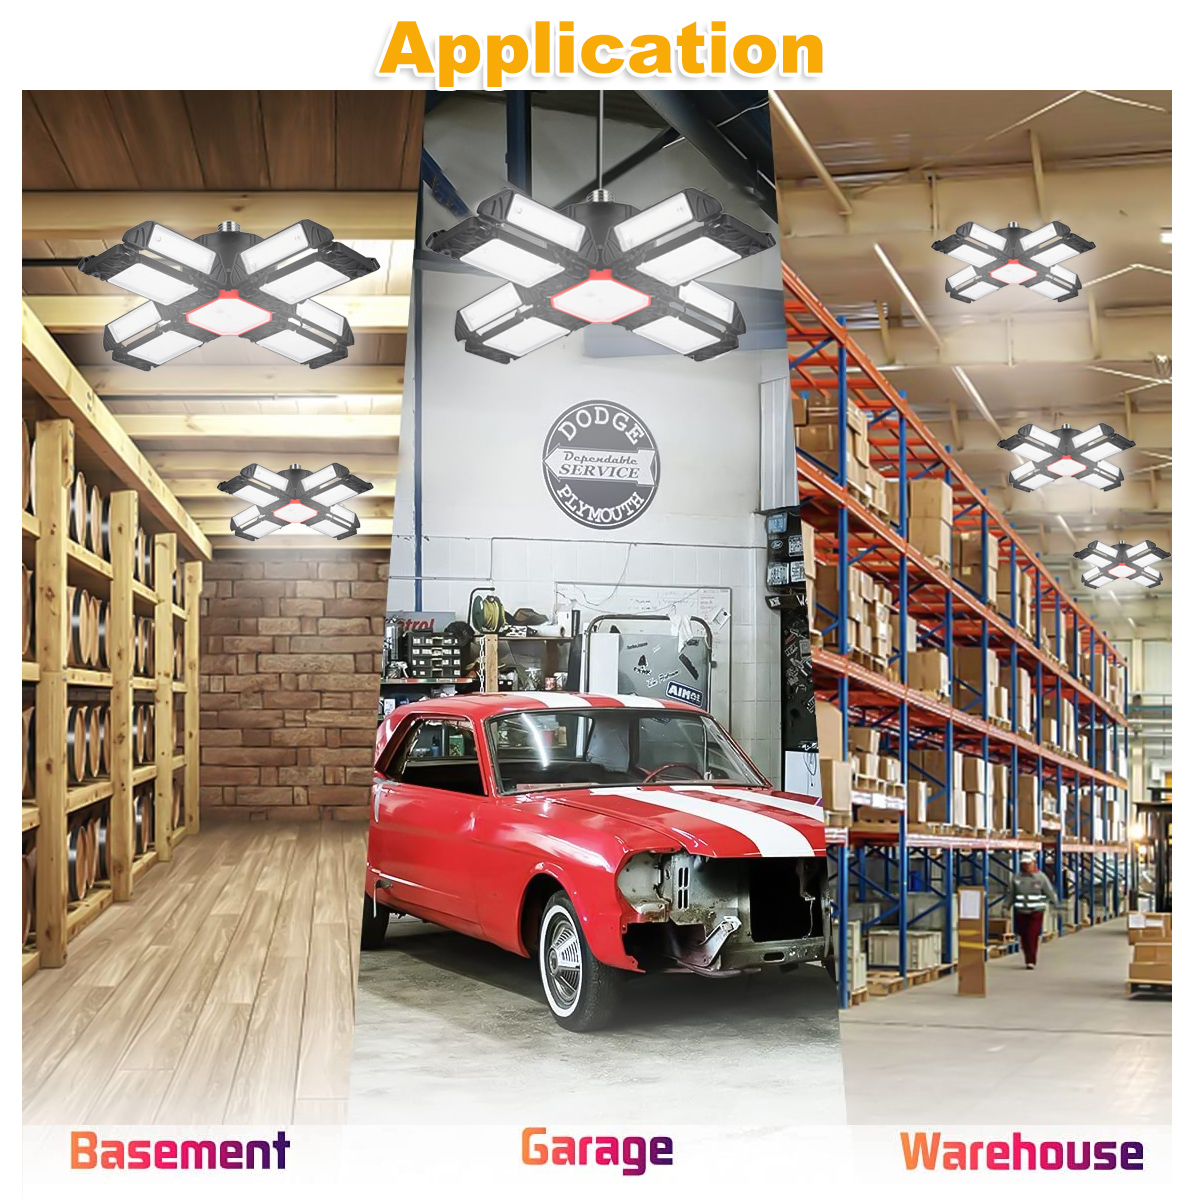 350W-E27-LED-Garage-Light-Deformable-Adjustable-Workshop-Ceiling-Lamp-High-Bay-Light-1908830-9